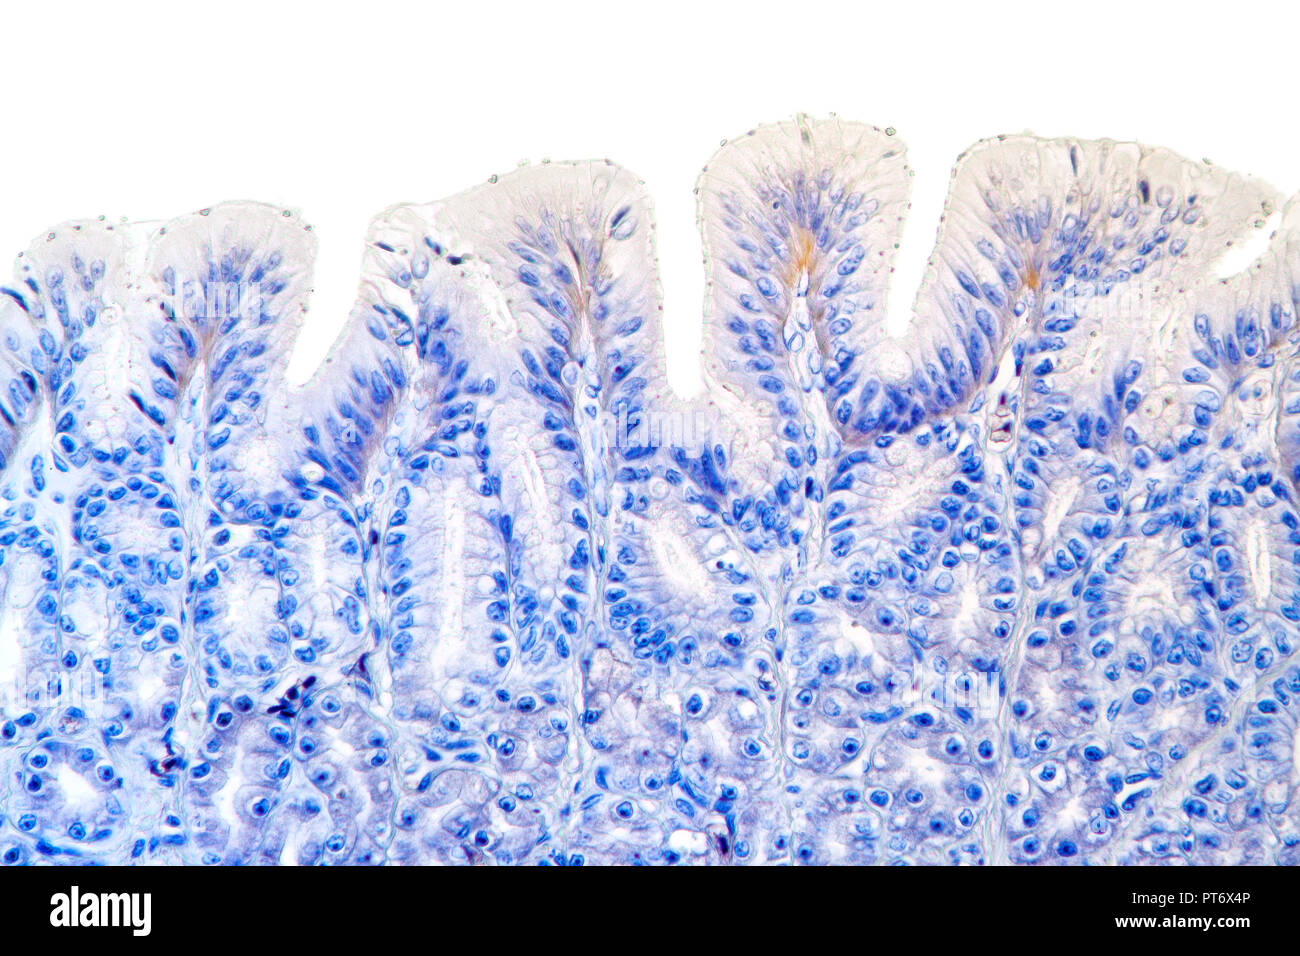 Rana parete dello stomaco dettaglio colorate, TS, fotomicrografia in campo chiaro Foto Stock